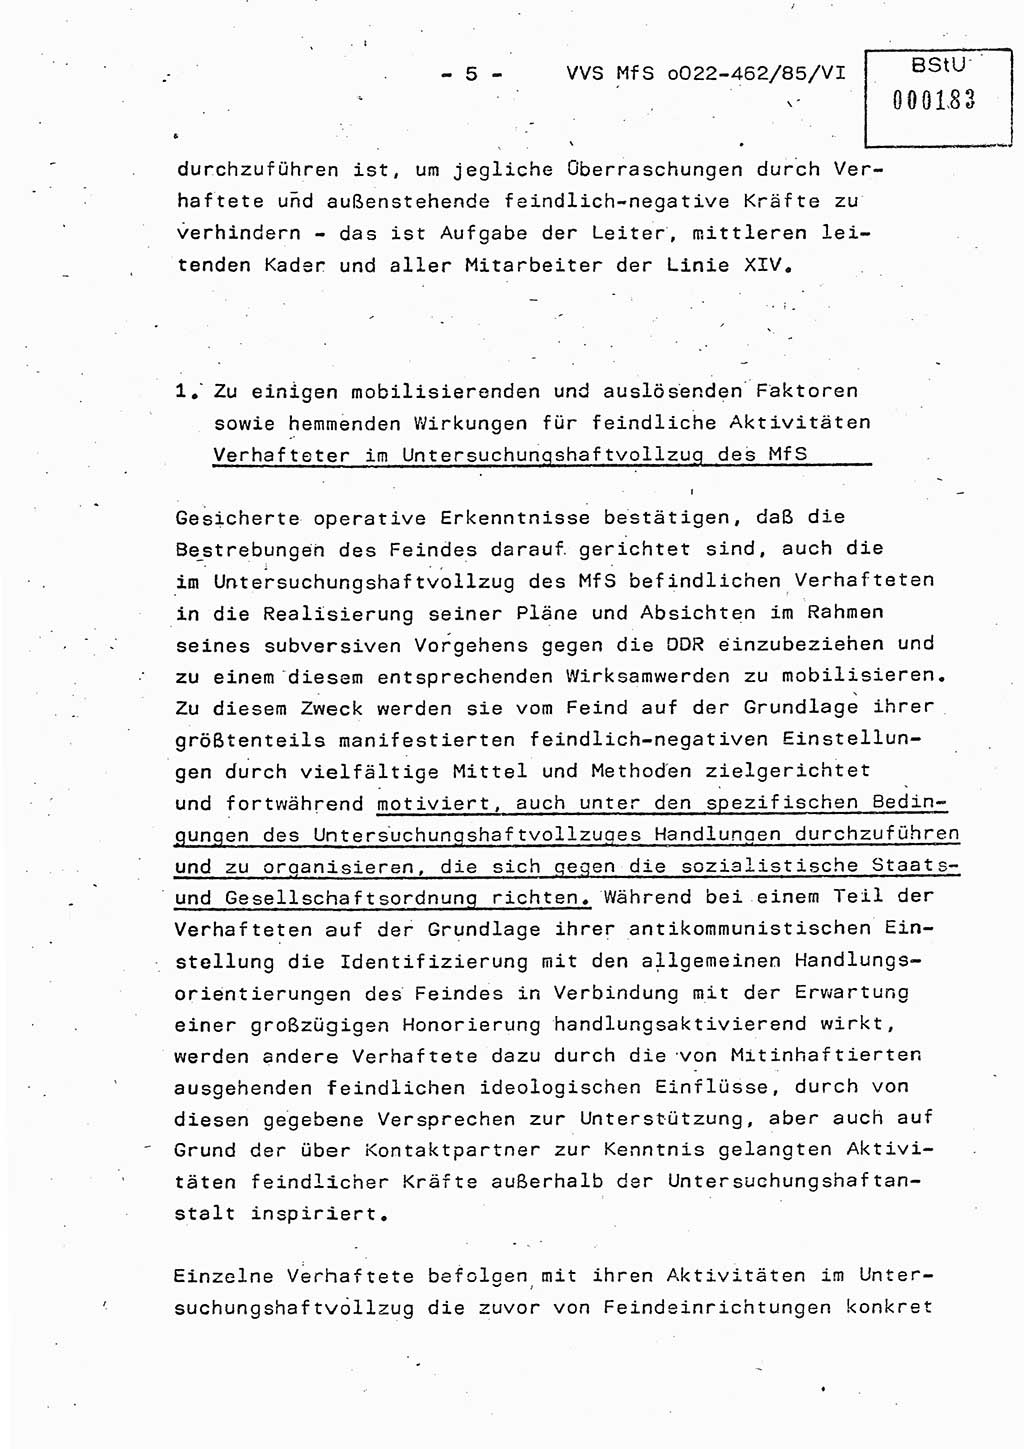 Der Untersuchungshaftvollzug im MfS, Schulungsmaterial Teil Ⅵ, Ministerium für Staatssicherheit [Deutsche Demokratische Republik (DDR)], Abteilung (Abt.) ⅩⅣ, Vertrauliche Verschlußsache (VVS) o022-462/85/Ⅵ, Berlin 1985, Seite 5 (Sch.-Mat. Ⅵ MfS DDR Abt. ⅩⅣ VVS o022-462/85/Ⅵ 1985, S. 5)